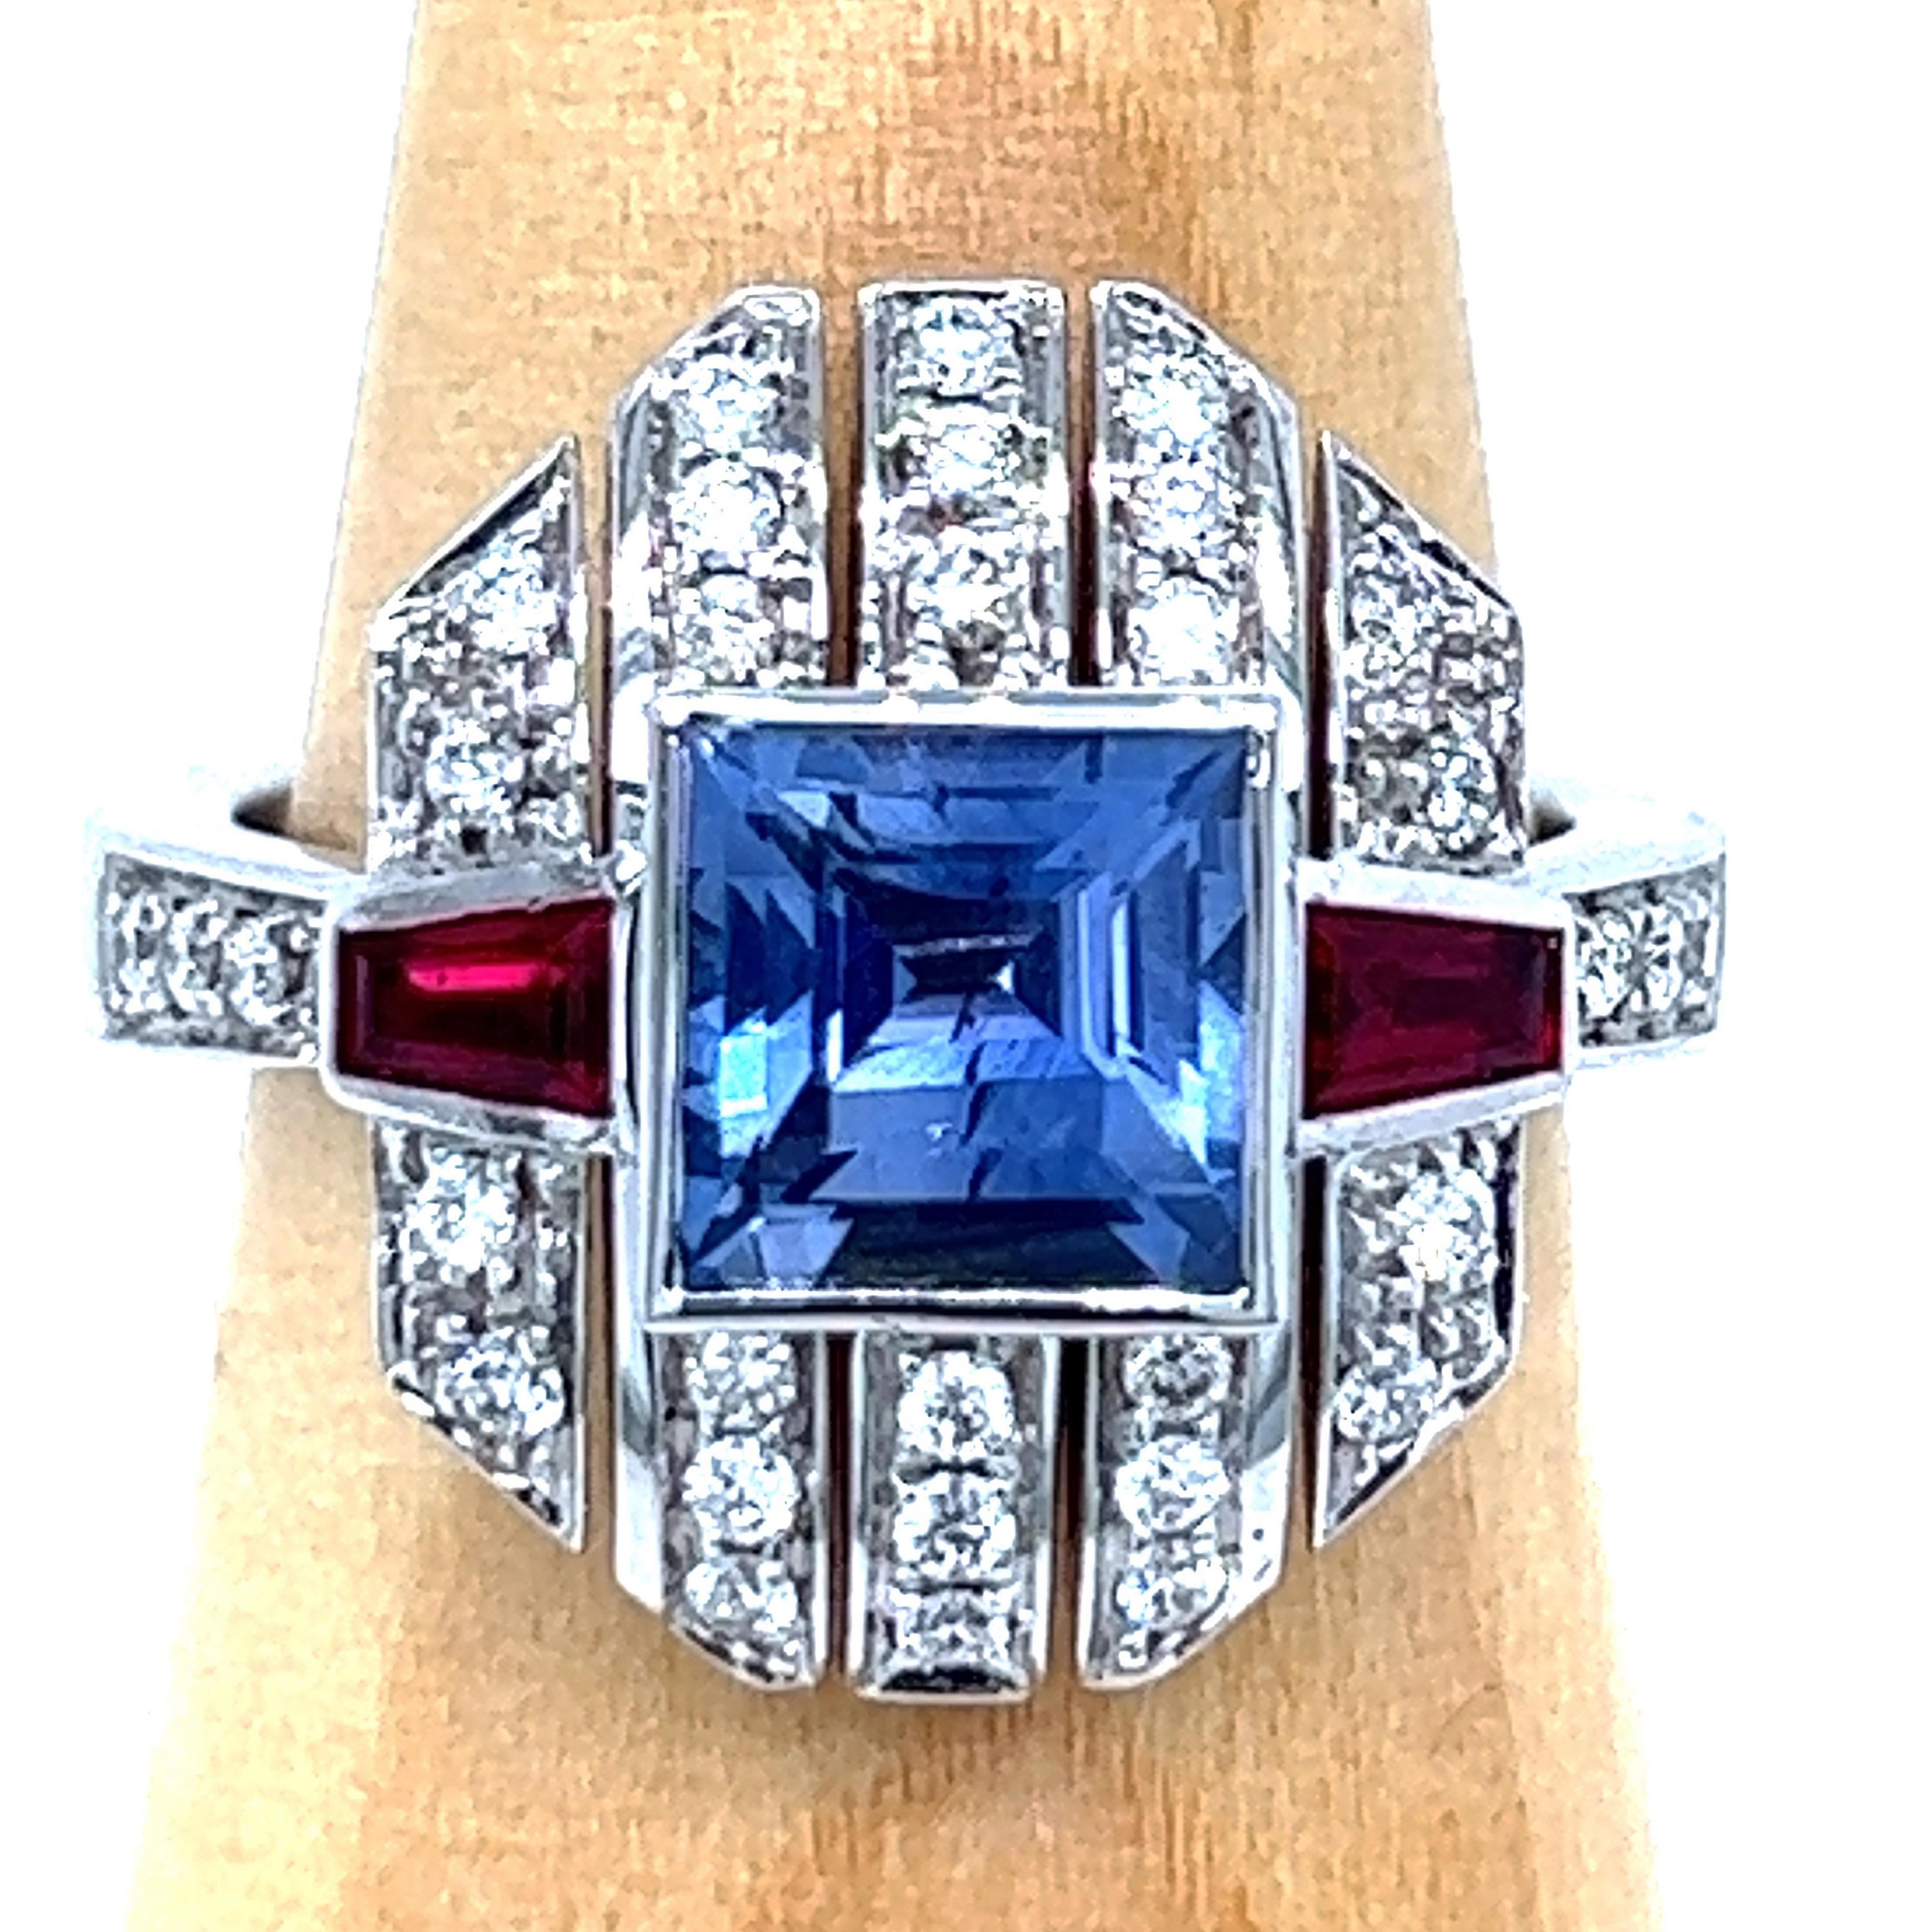 168 carat diamond price